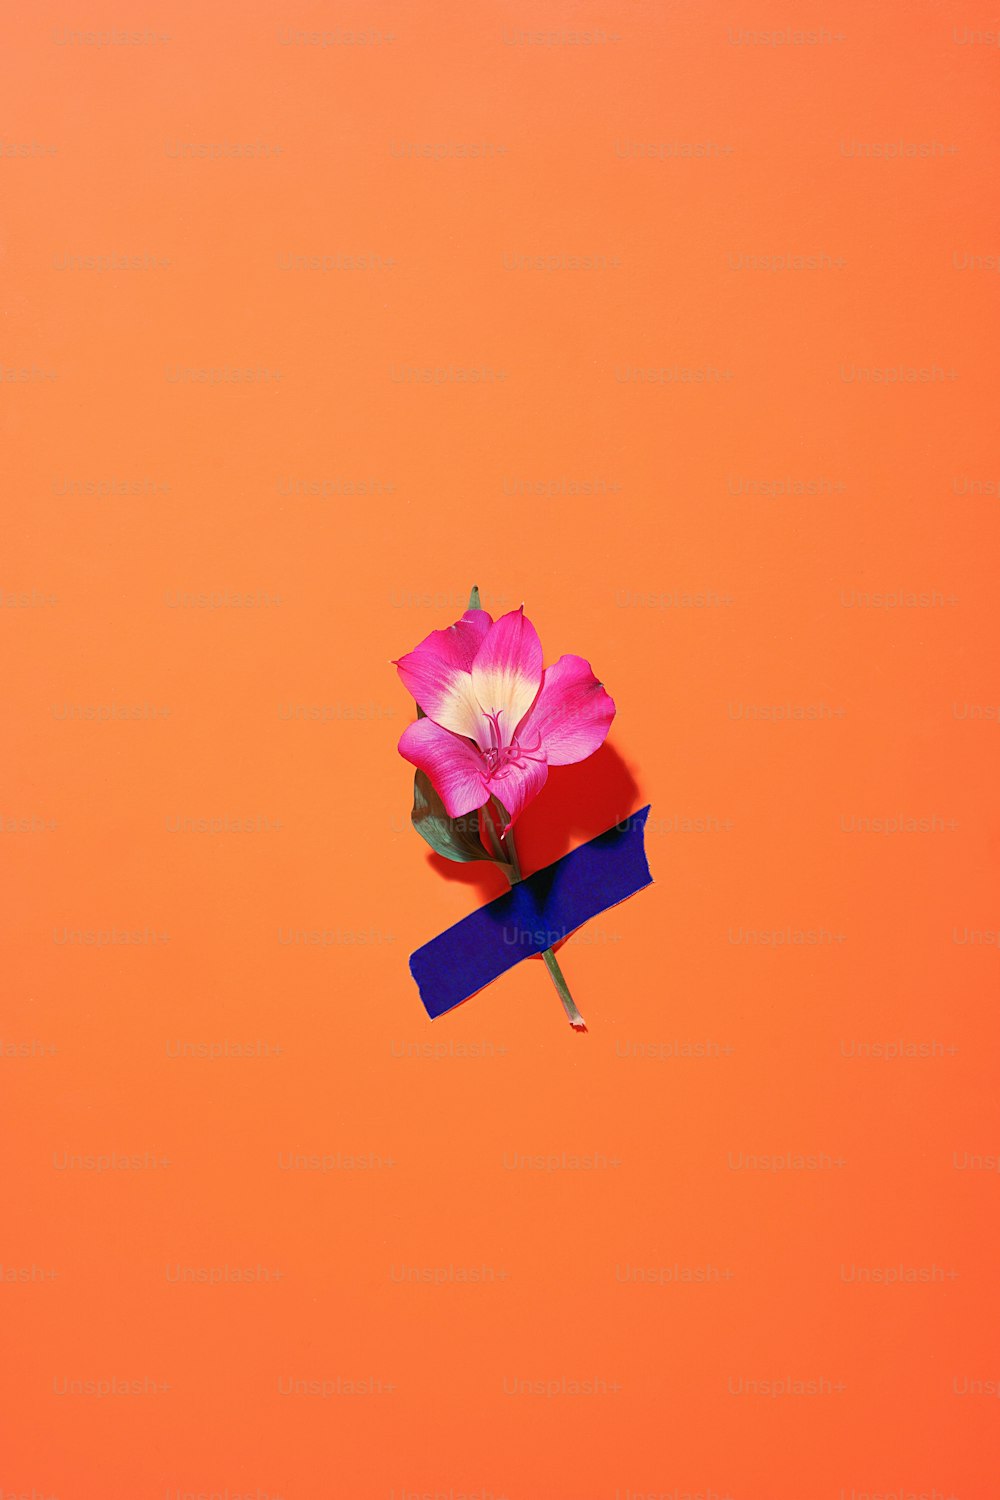 Una sola flor rosa encima de una cinta azul